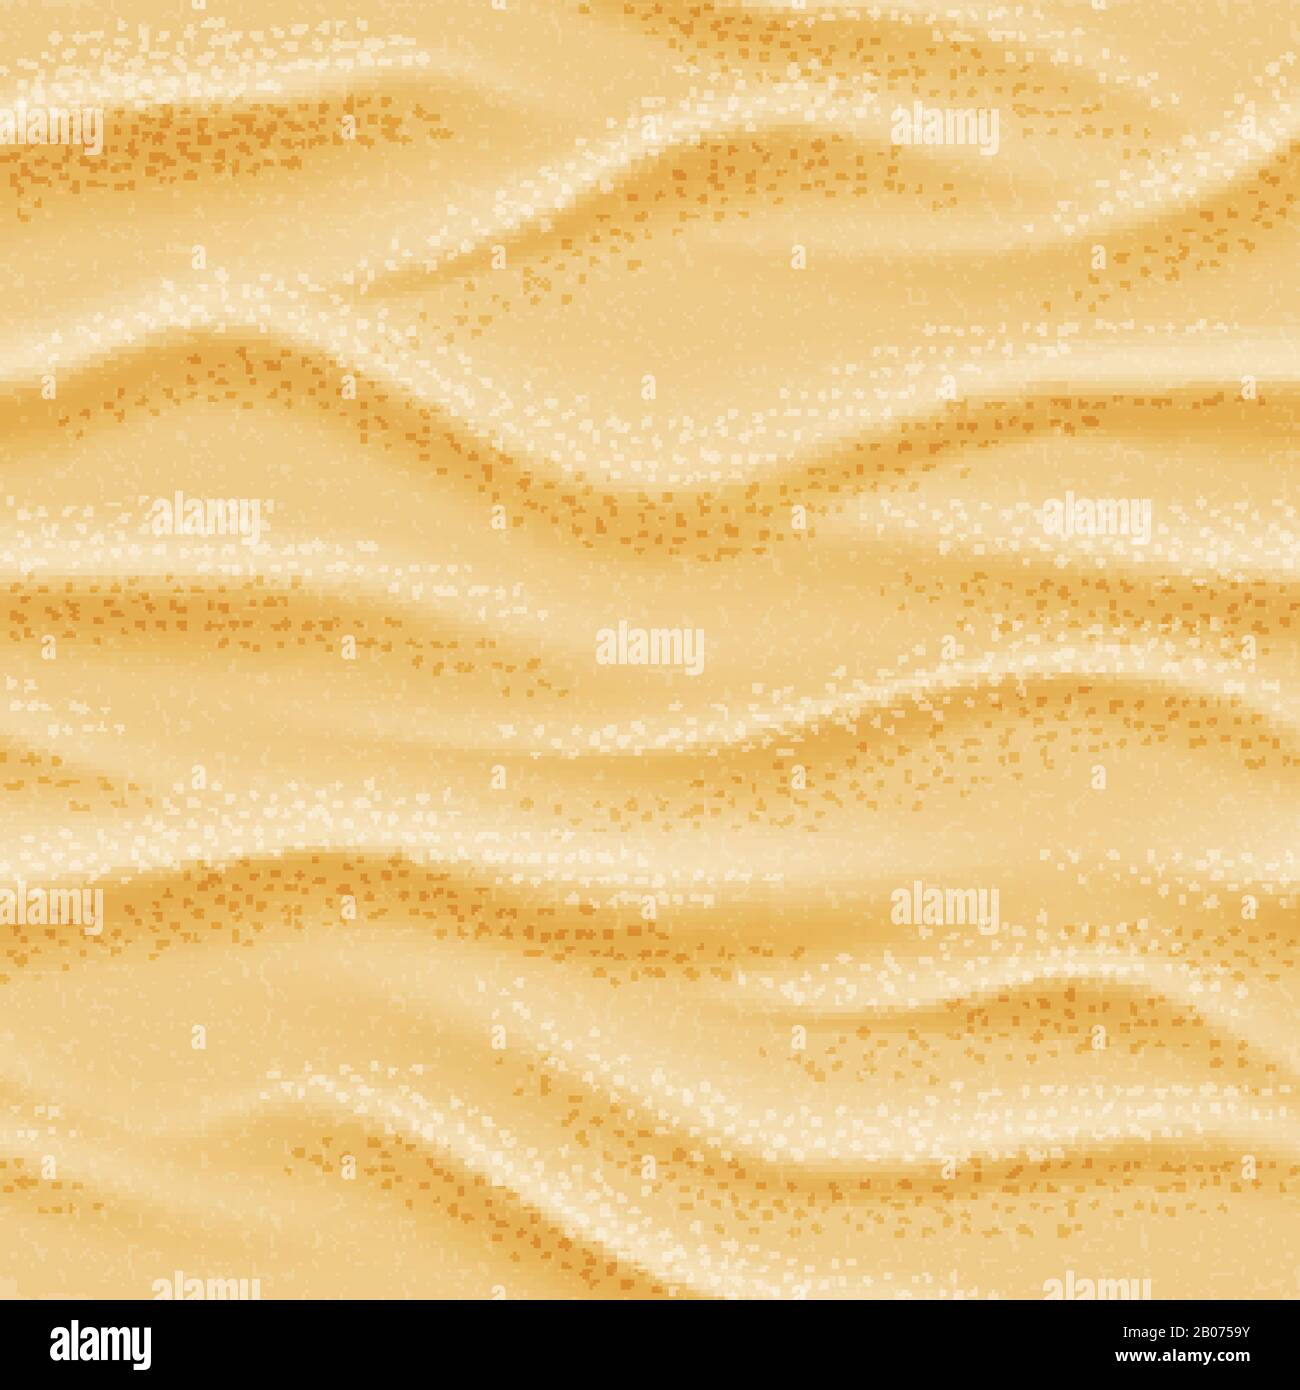 Realistischer nahtloser Vektor Strand Meer Sand Hintergrund. Naturgewellenabbildung in der trockenen Wüste Stock Vektor